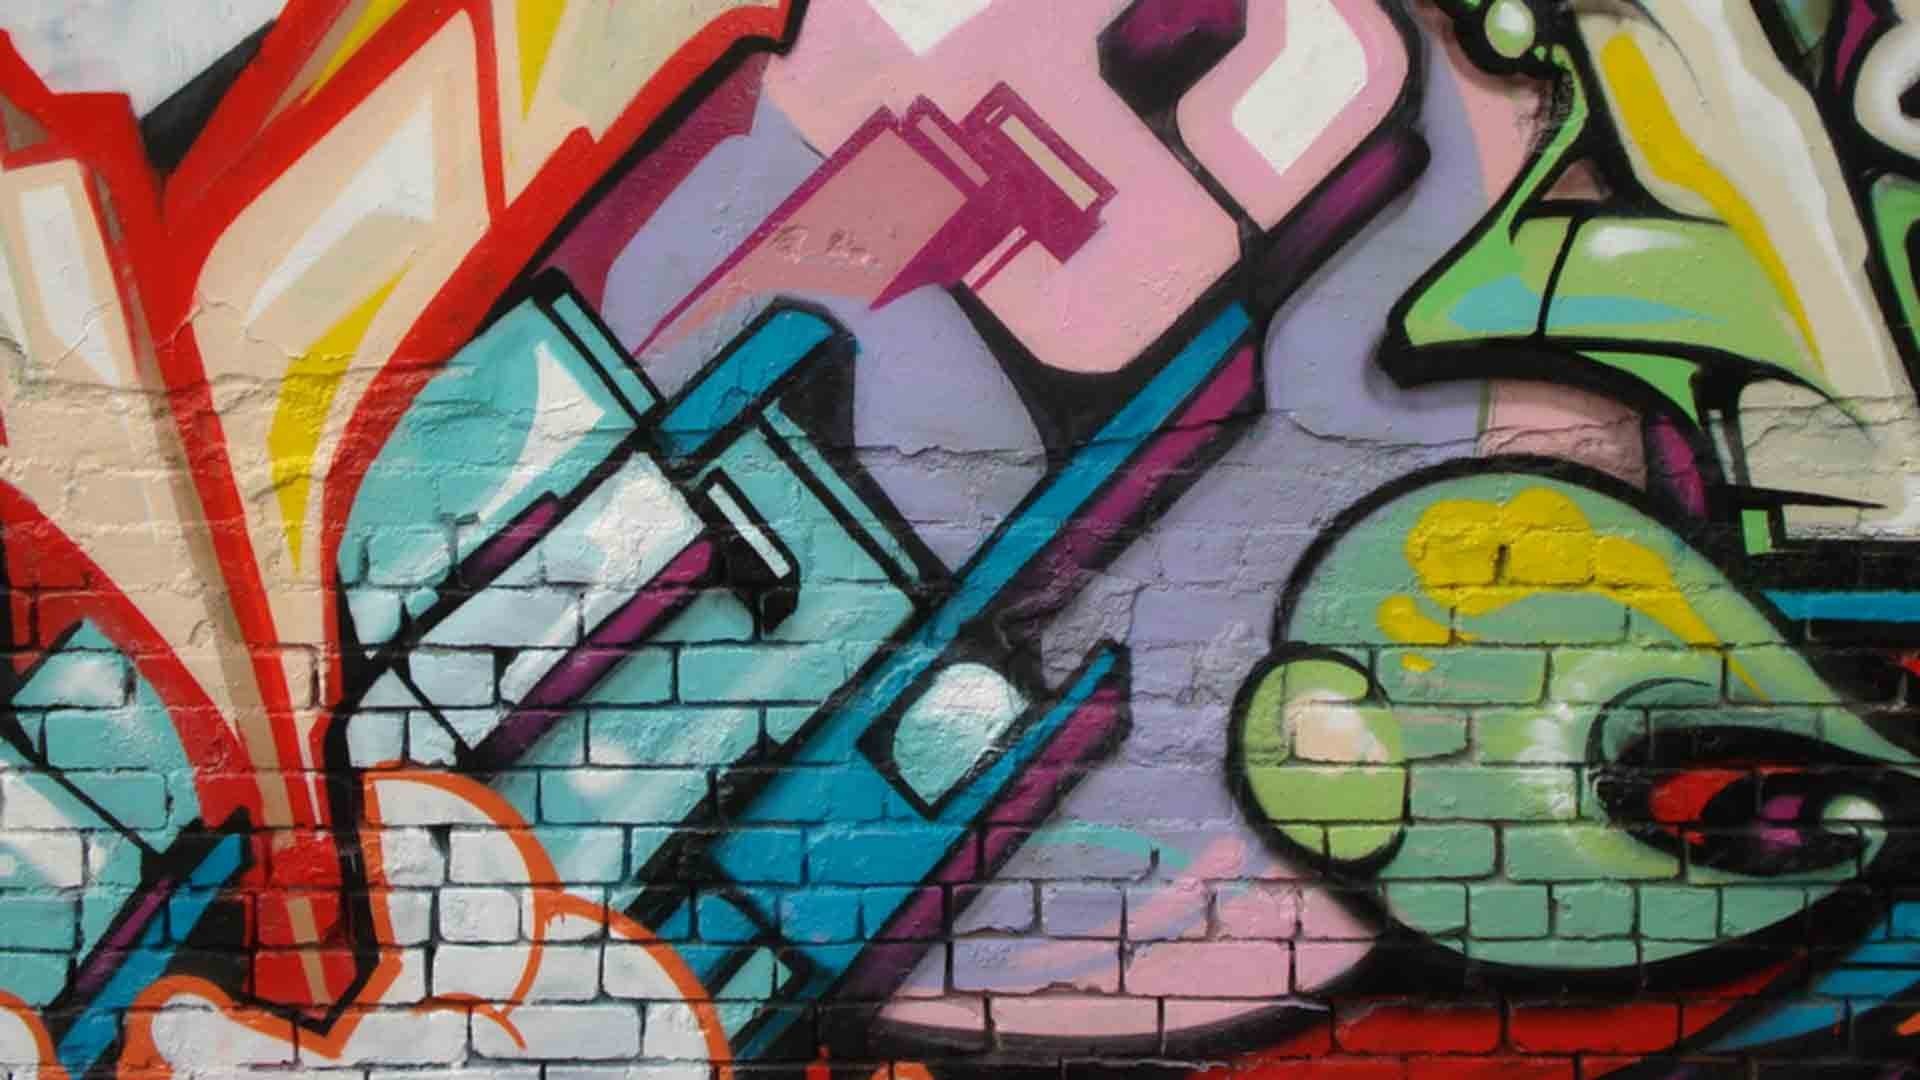 1920x1080 Colorful Graffiti Wallpaper Images - Uncalke.com